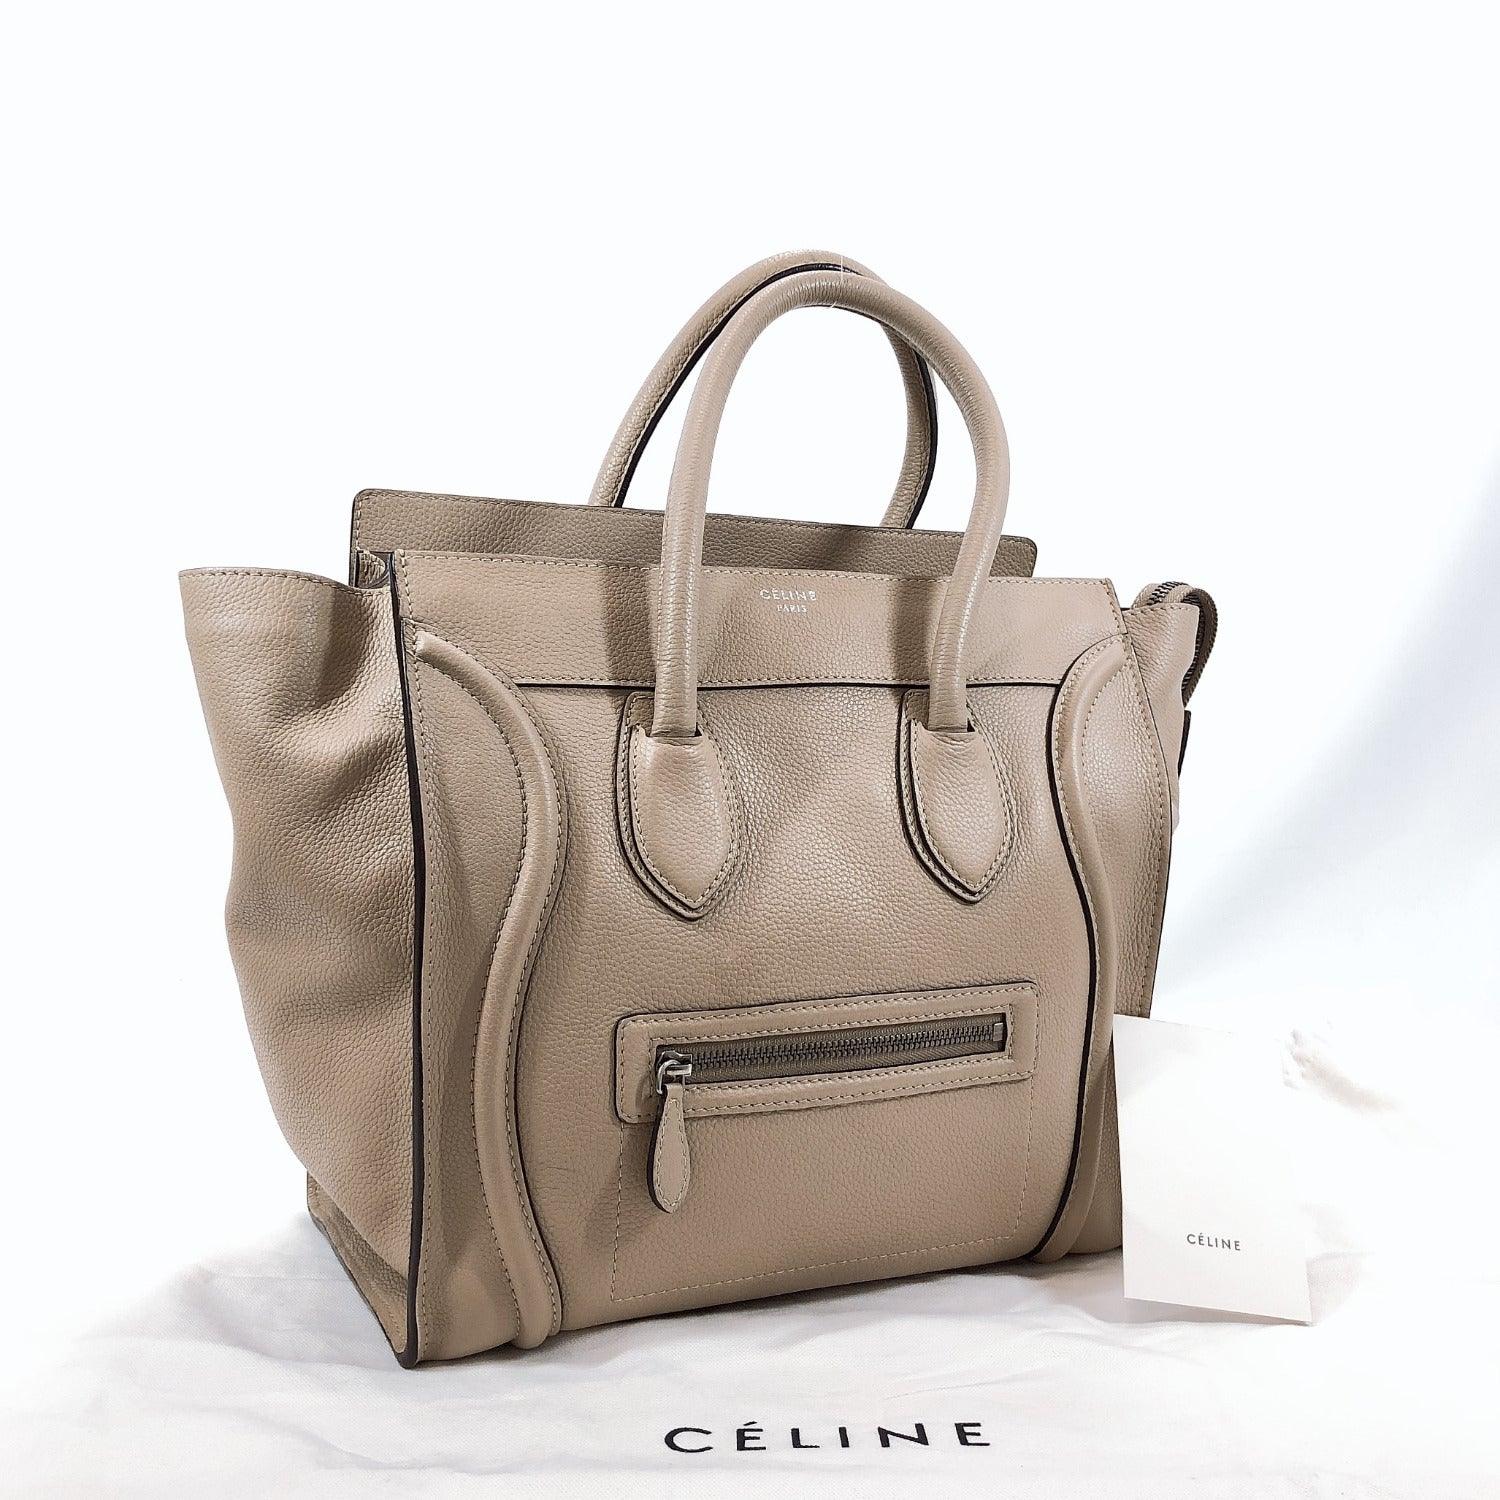 Celine Mini Luggage Tote Bag